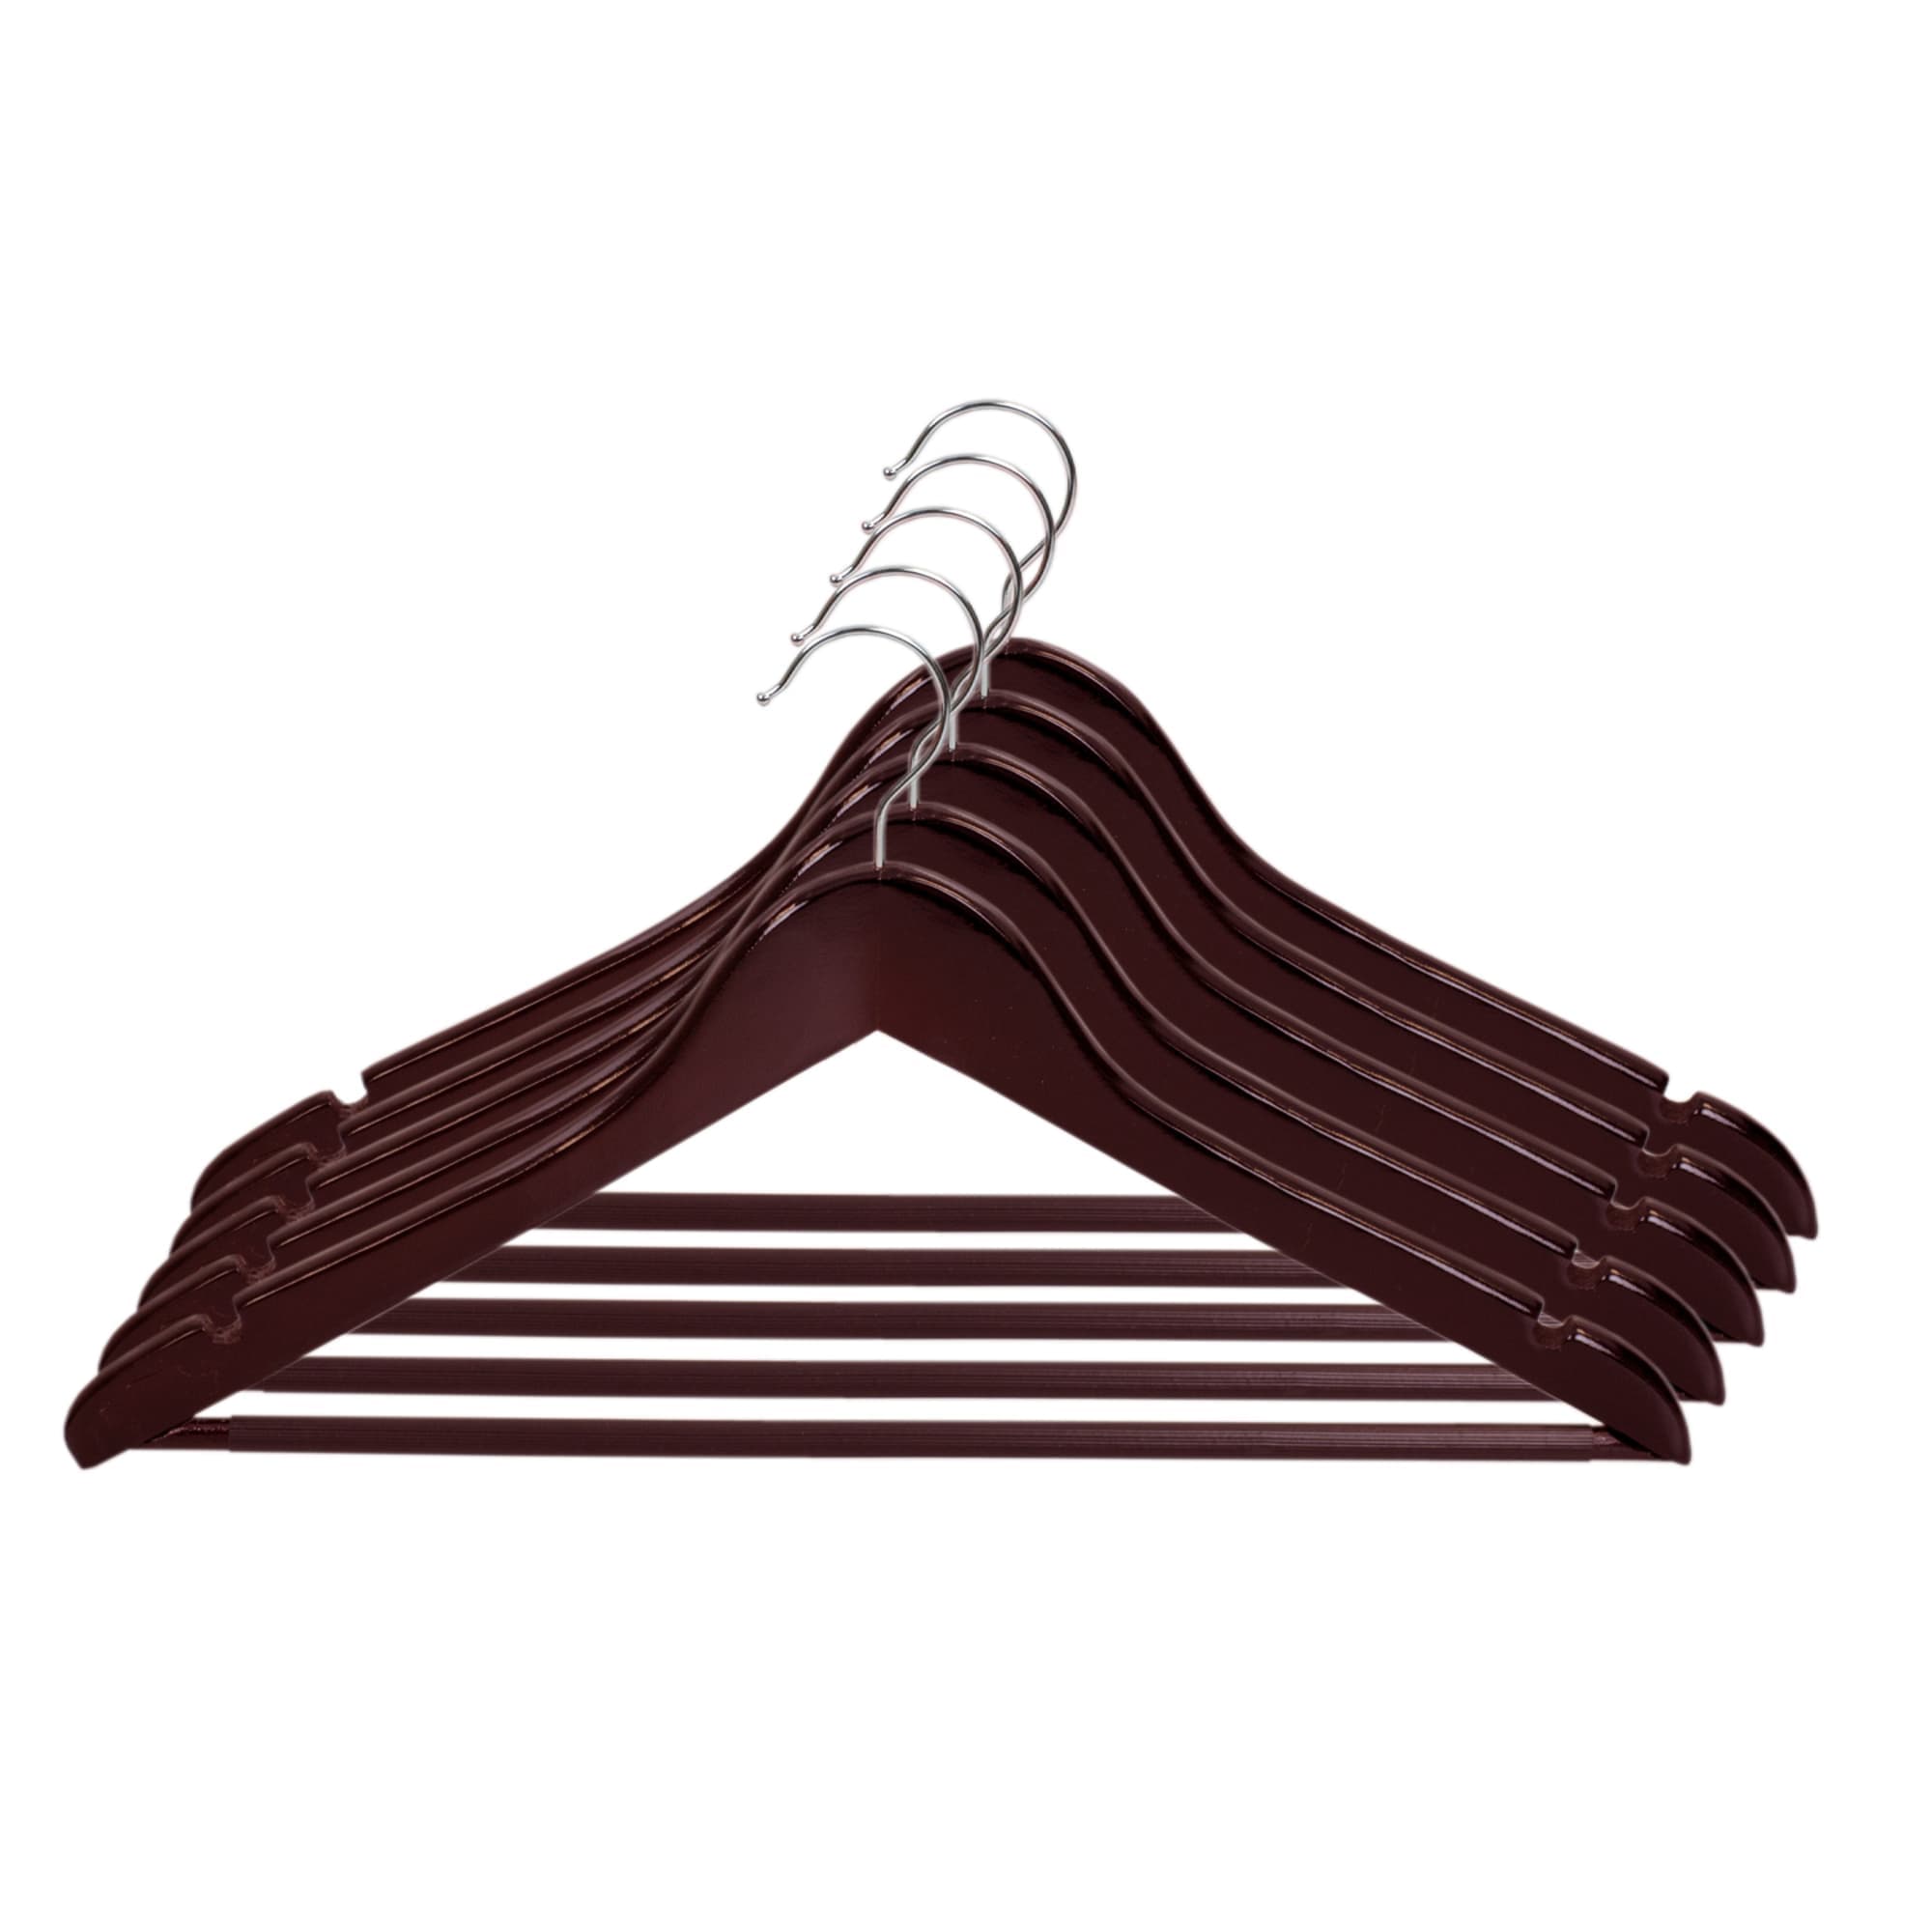 Home Basics Non-Slip Wood Hanger, (Pack of 5), Cherry $5.00 EACH, CASE PACK OF 12